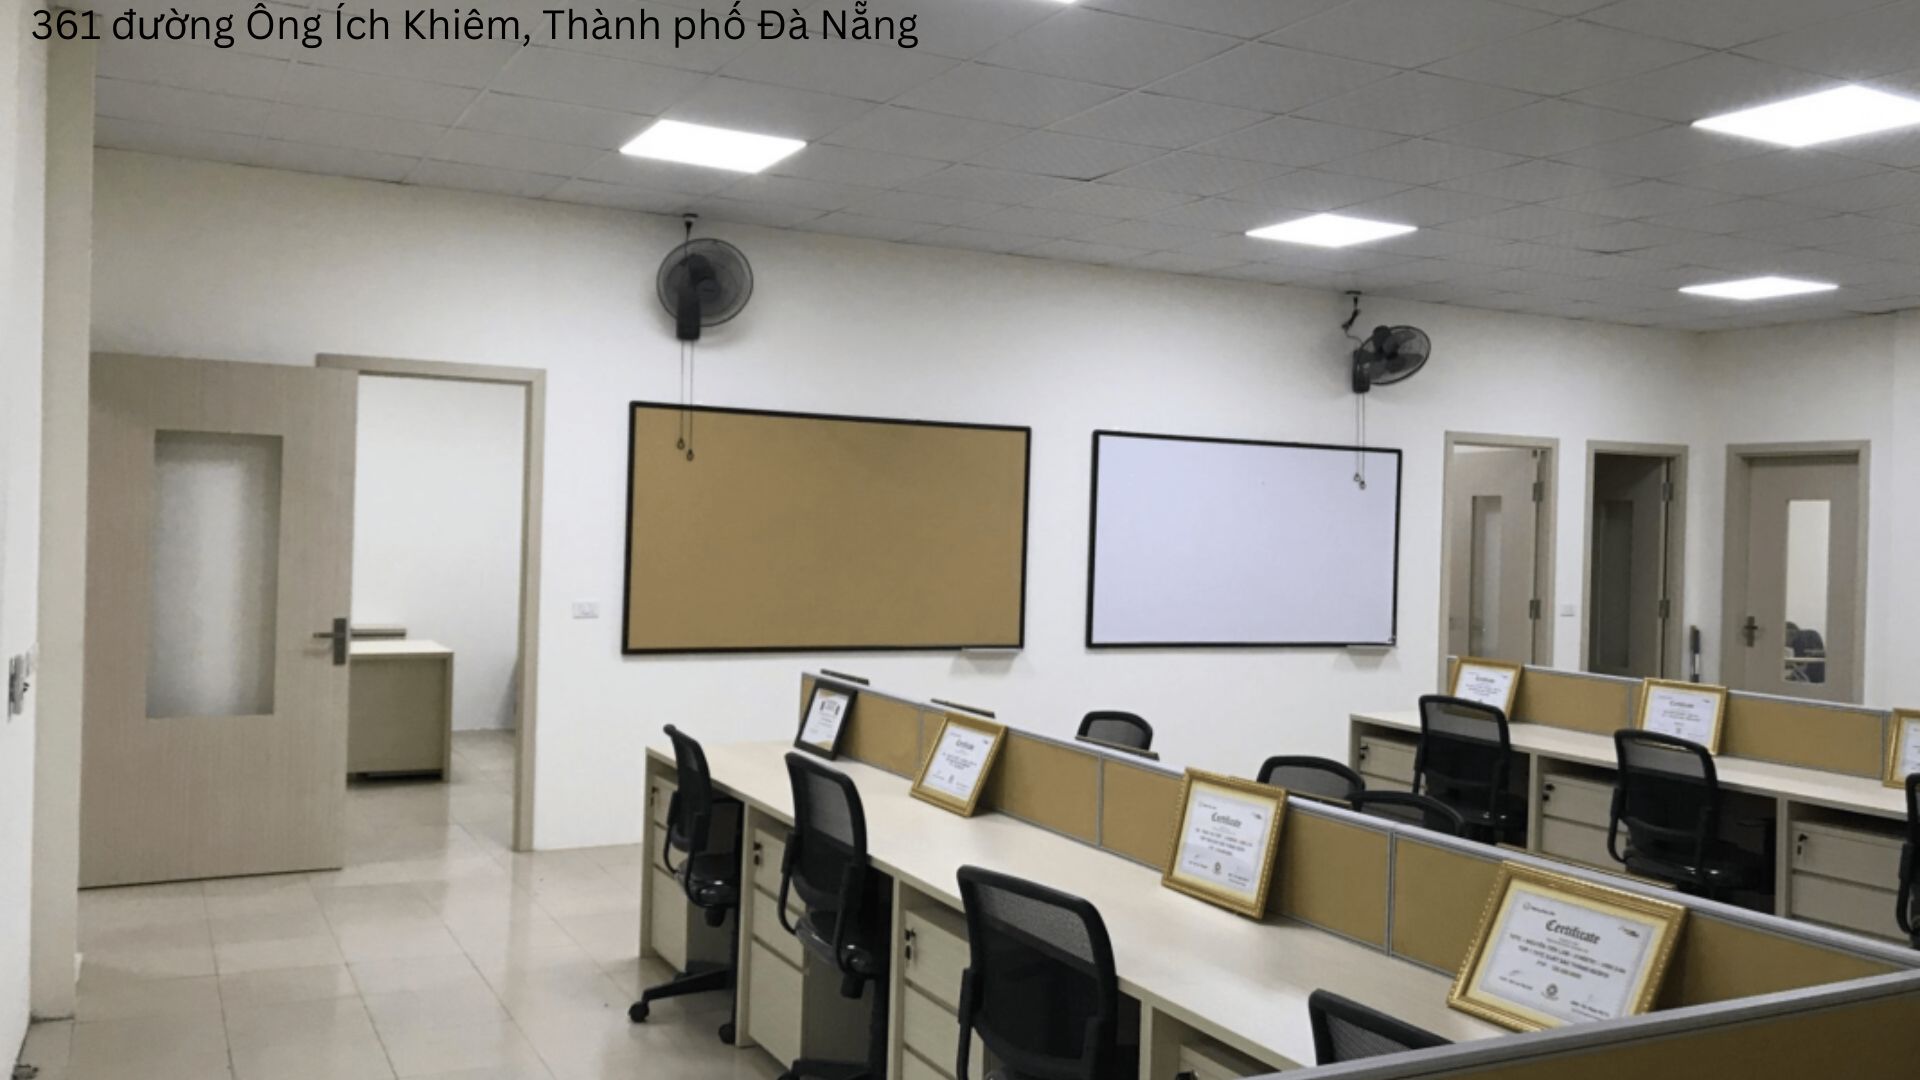 Nội thất Thành Phú - Địa chỉ cung cấp ghế văn phòng Đà Nẵng giá rẻ